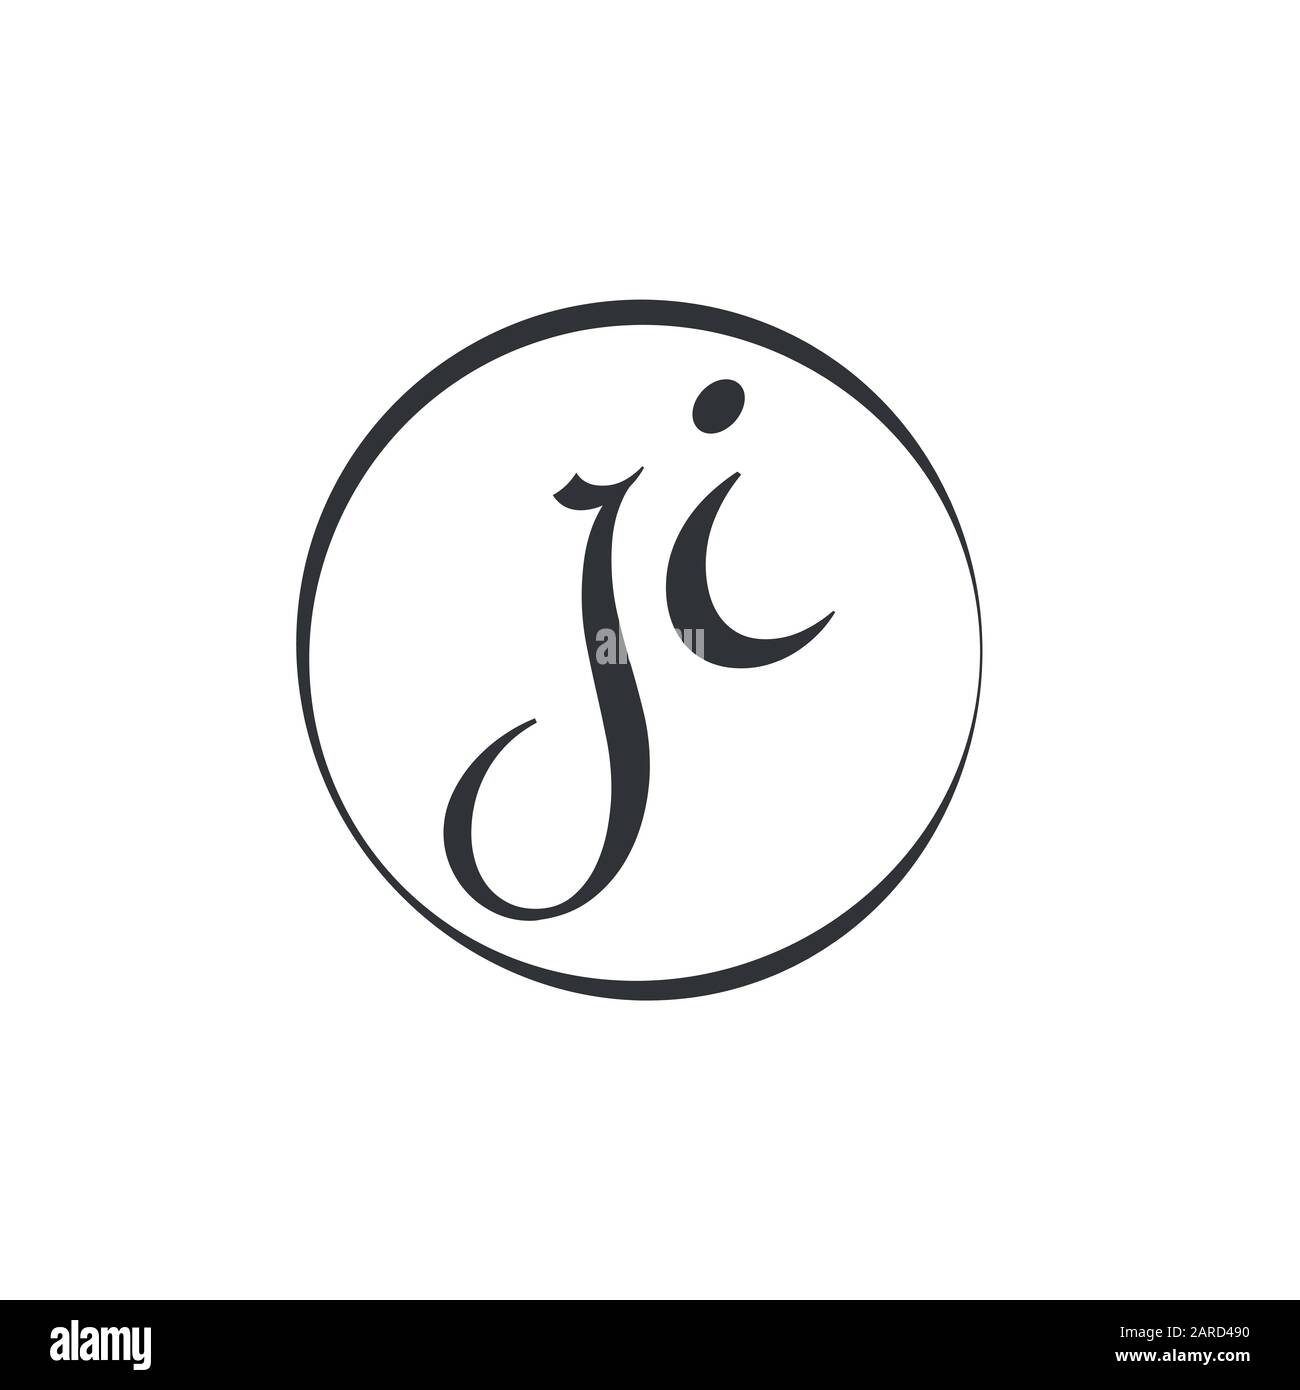 letter JI Logo Design Vector Template. Initial Linked Letter Design JI Vector Illustration Stock Vector